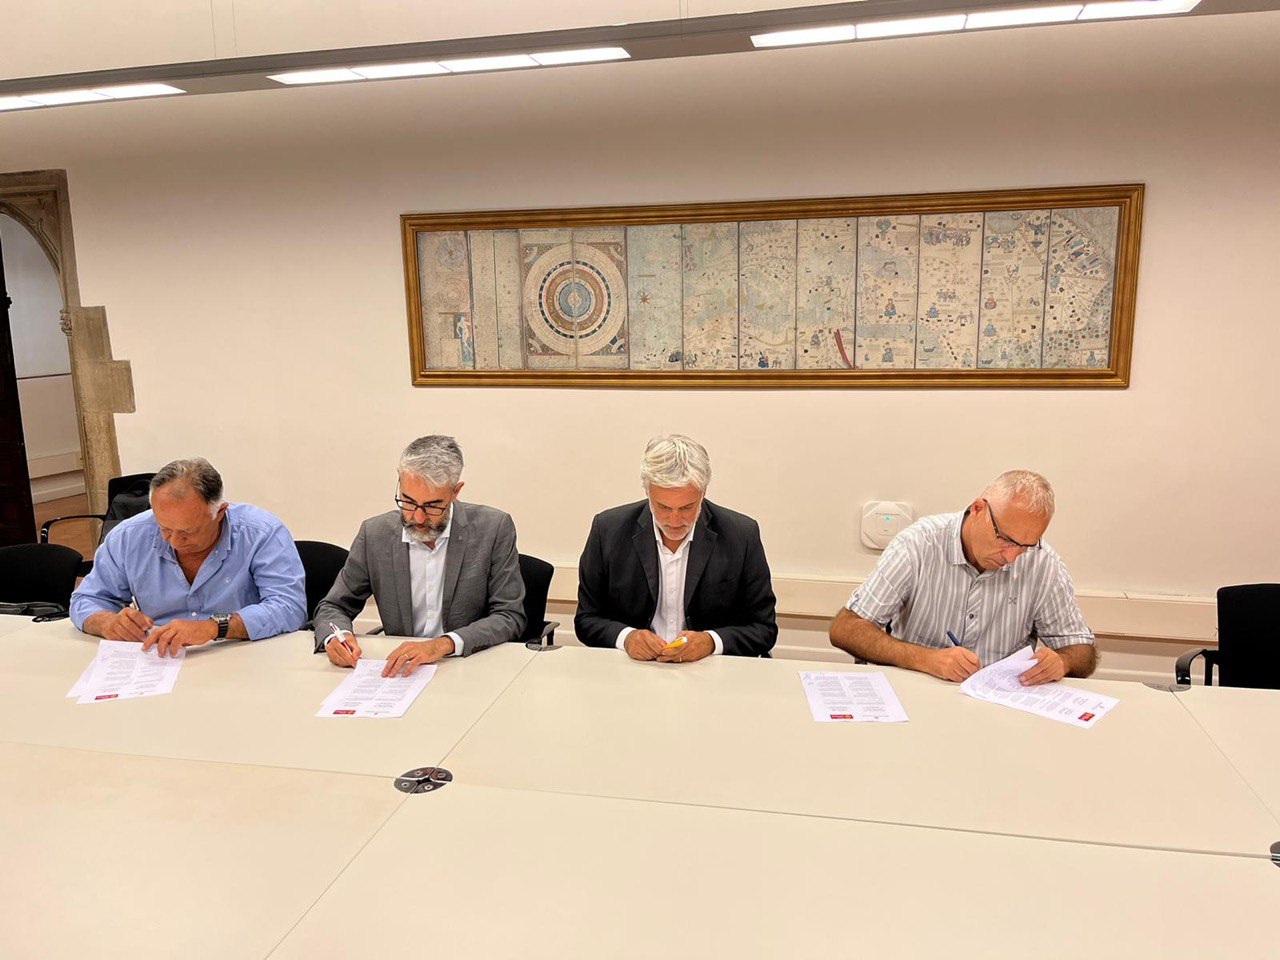 Representants del Govern de la Generalitat, el Consell Regional d’Occitània i pescadors signant la Declaració de Barcelona